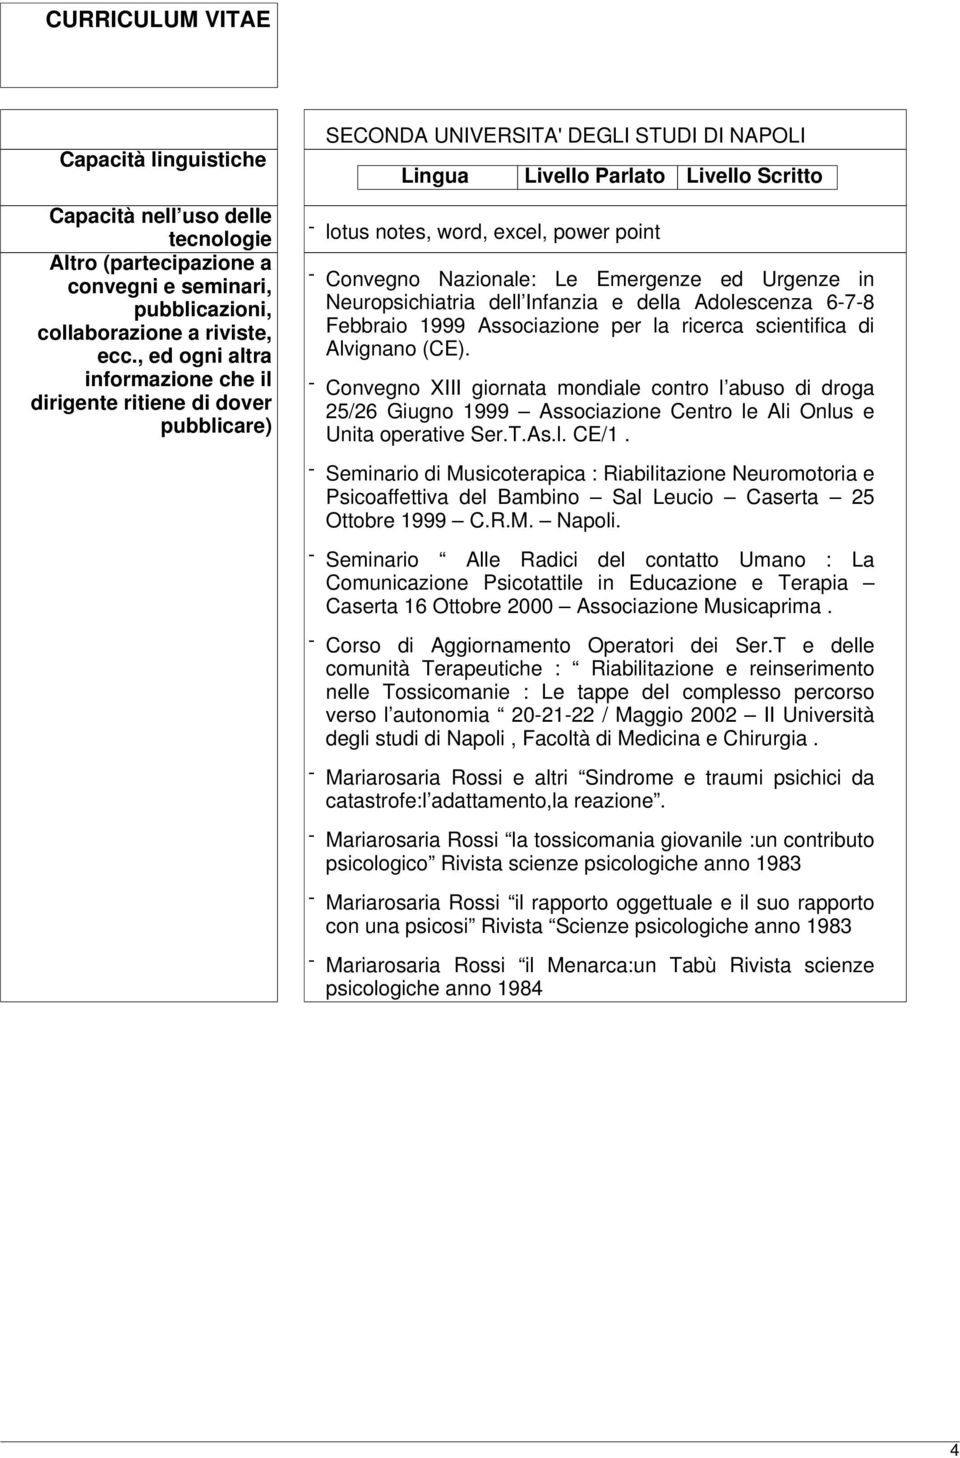 Convegno Nazionale: Le Emergenze ed Urgenze in Neuropsichiatria dell Infanzia e della Adolescenza 6-7-8 Febbraio 1999 Associazione per la ricerca scientifica di Alvignano (CE).